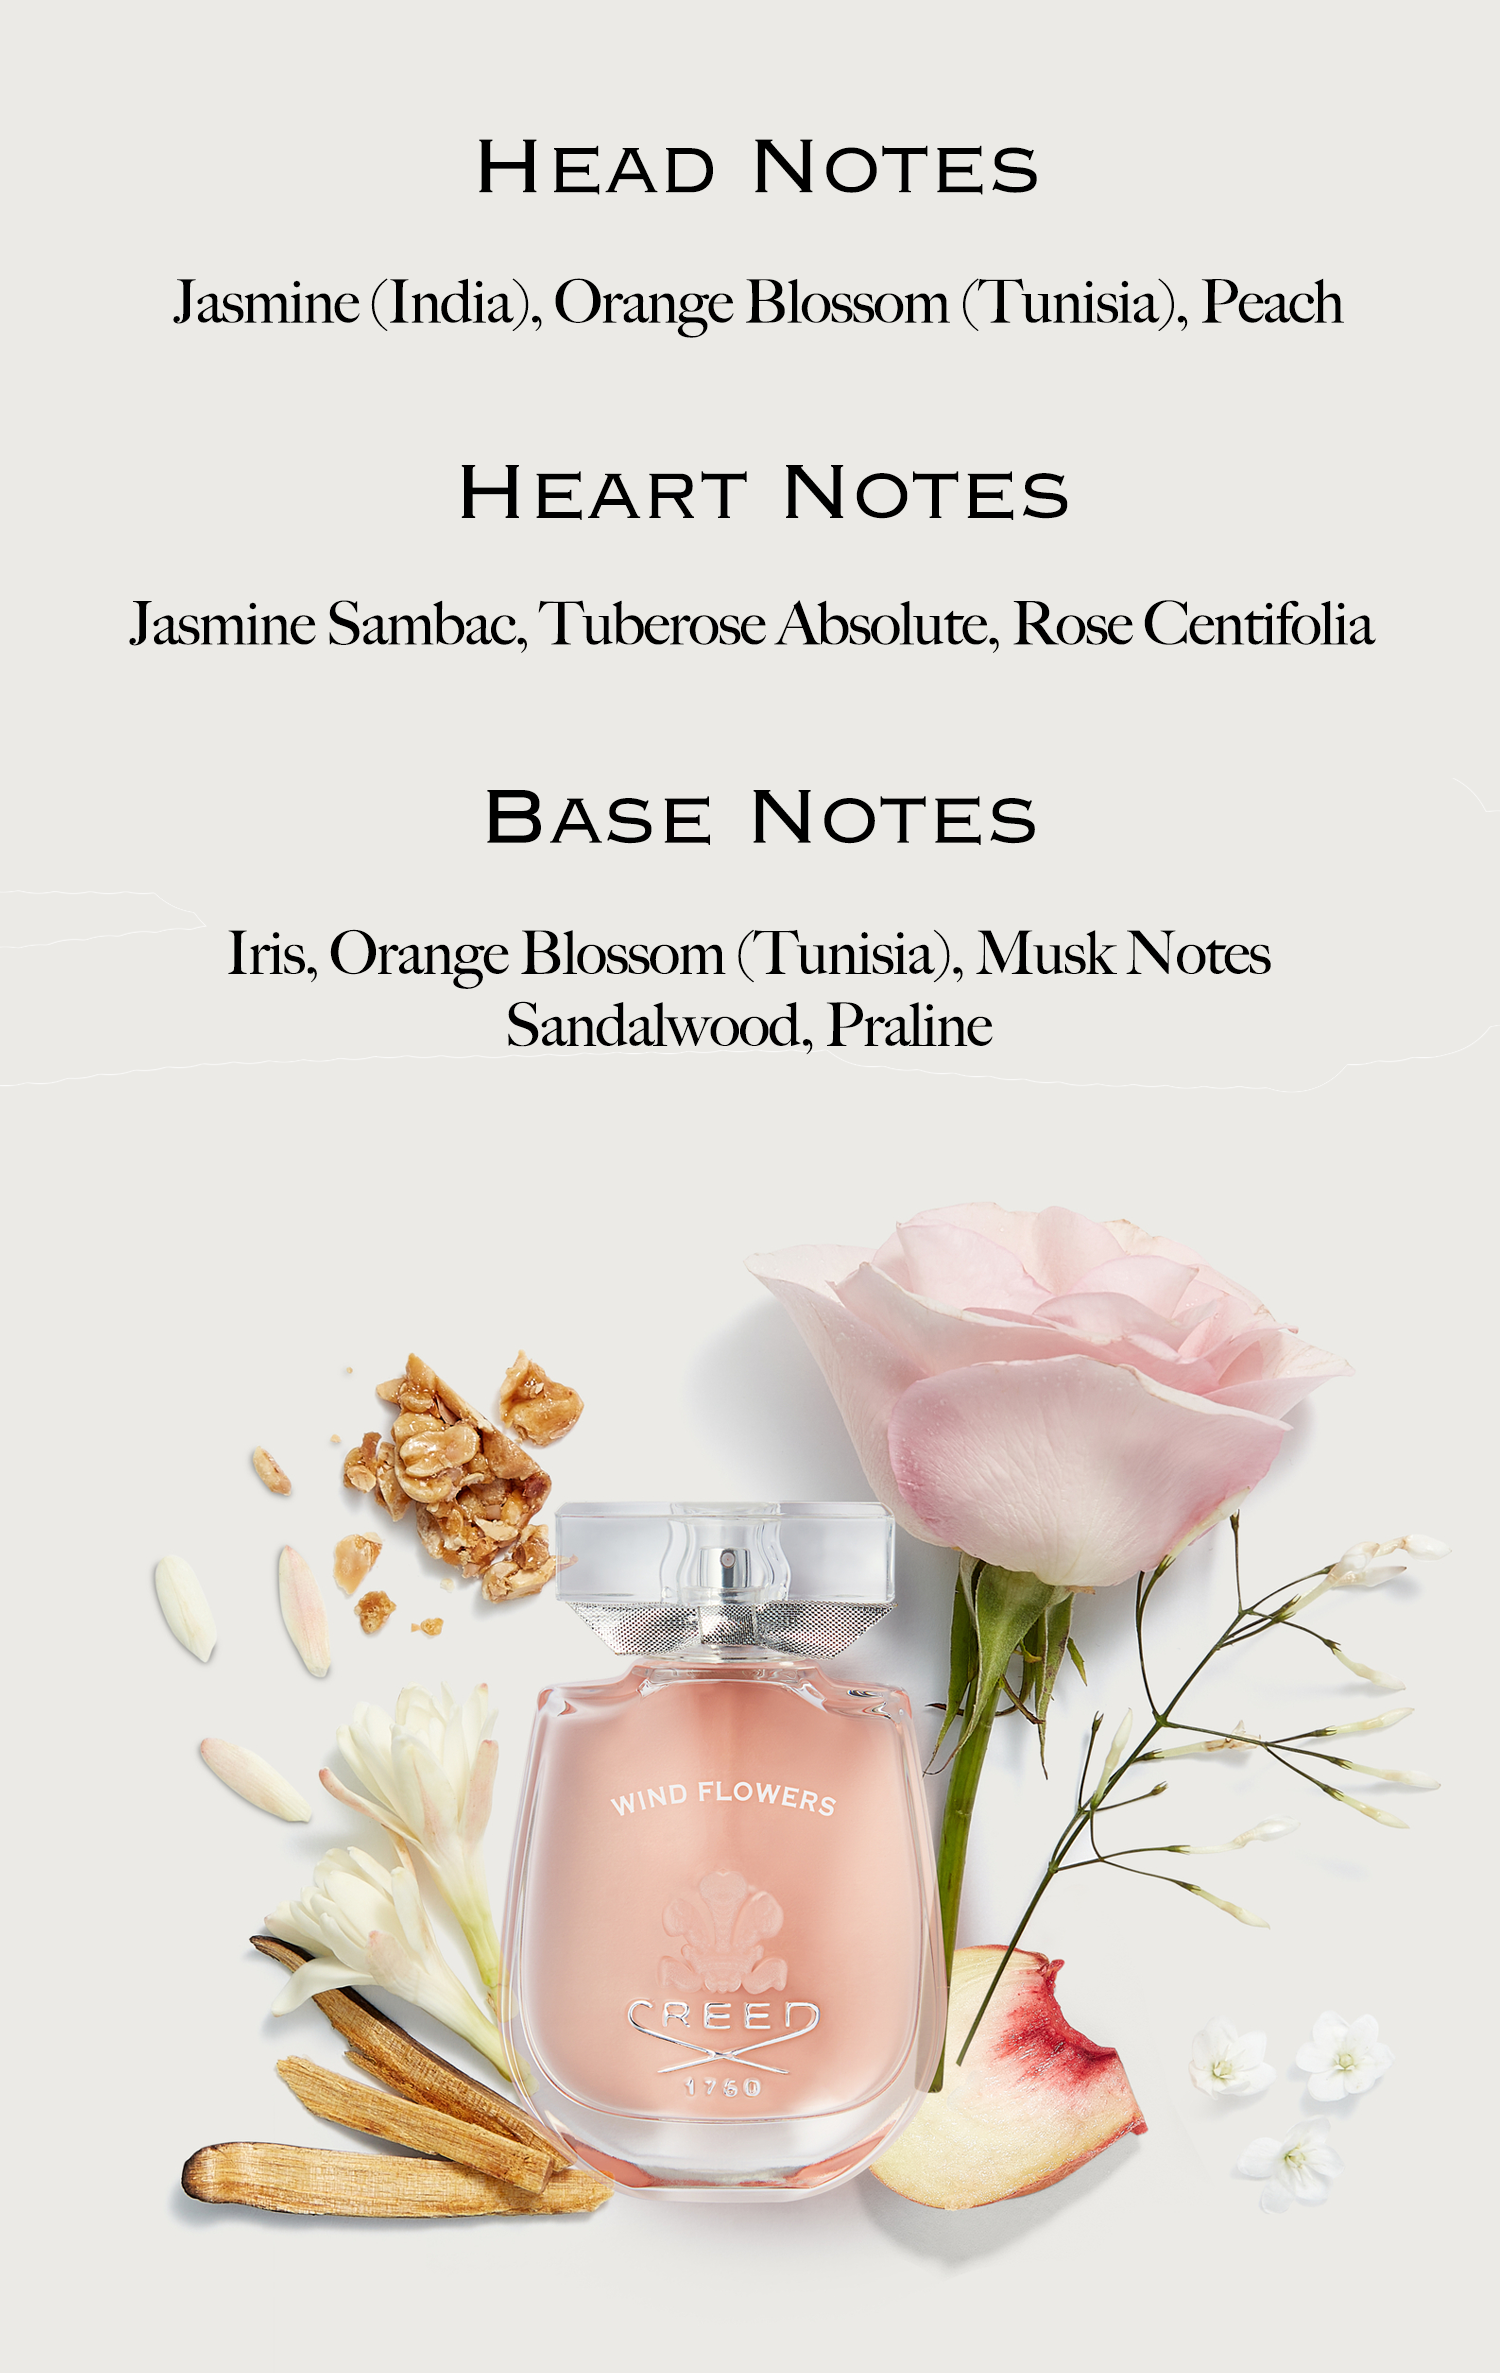 Head notes. Jasmine (India), Orange Blossom (Tunisia), Peach. Heart Notes. Jasmine Sambac, Tuberose Absolute, Rose Centifolia. Base Notes. Irish, Orange Blossom (Tunisia), Musk notes Sandalwood, Praline.